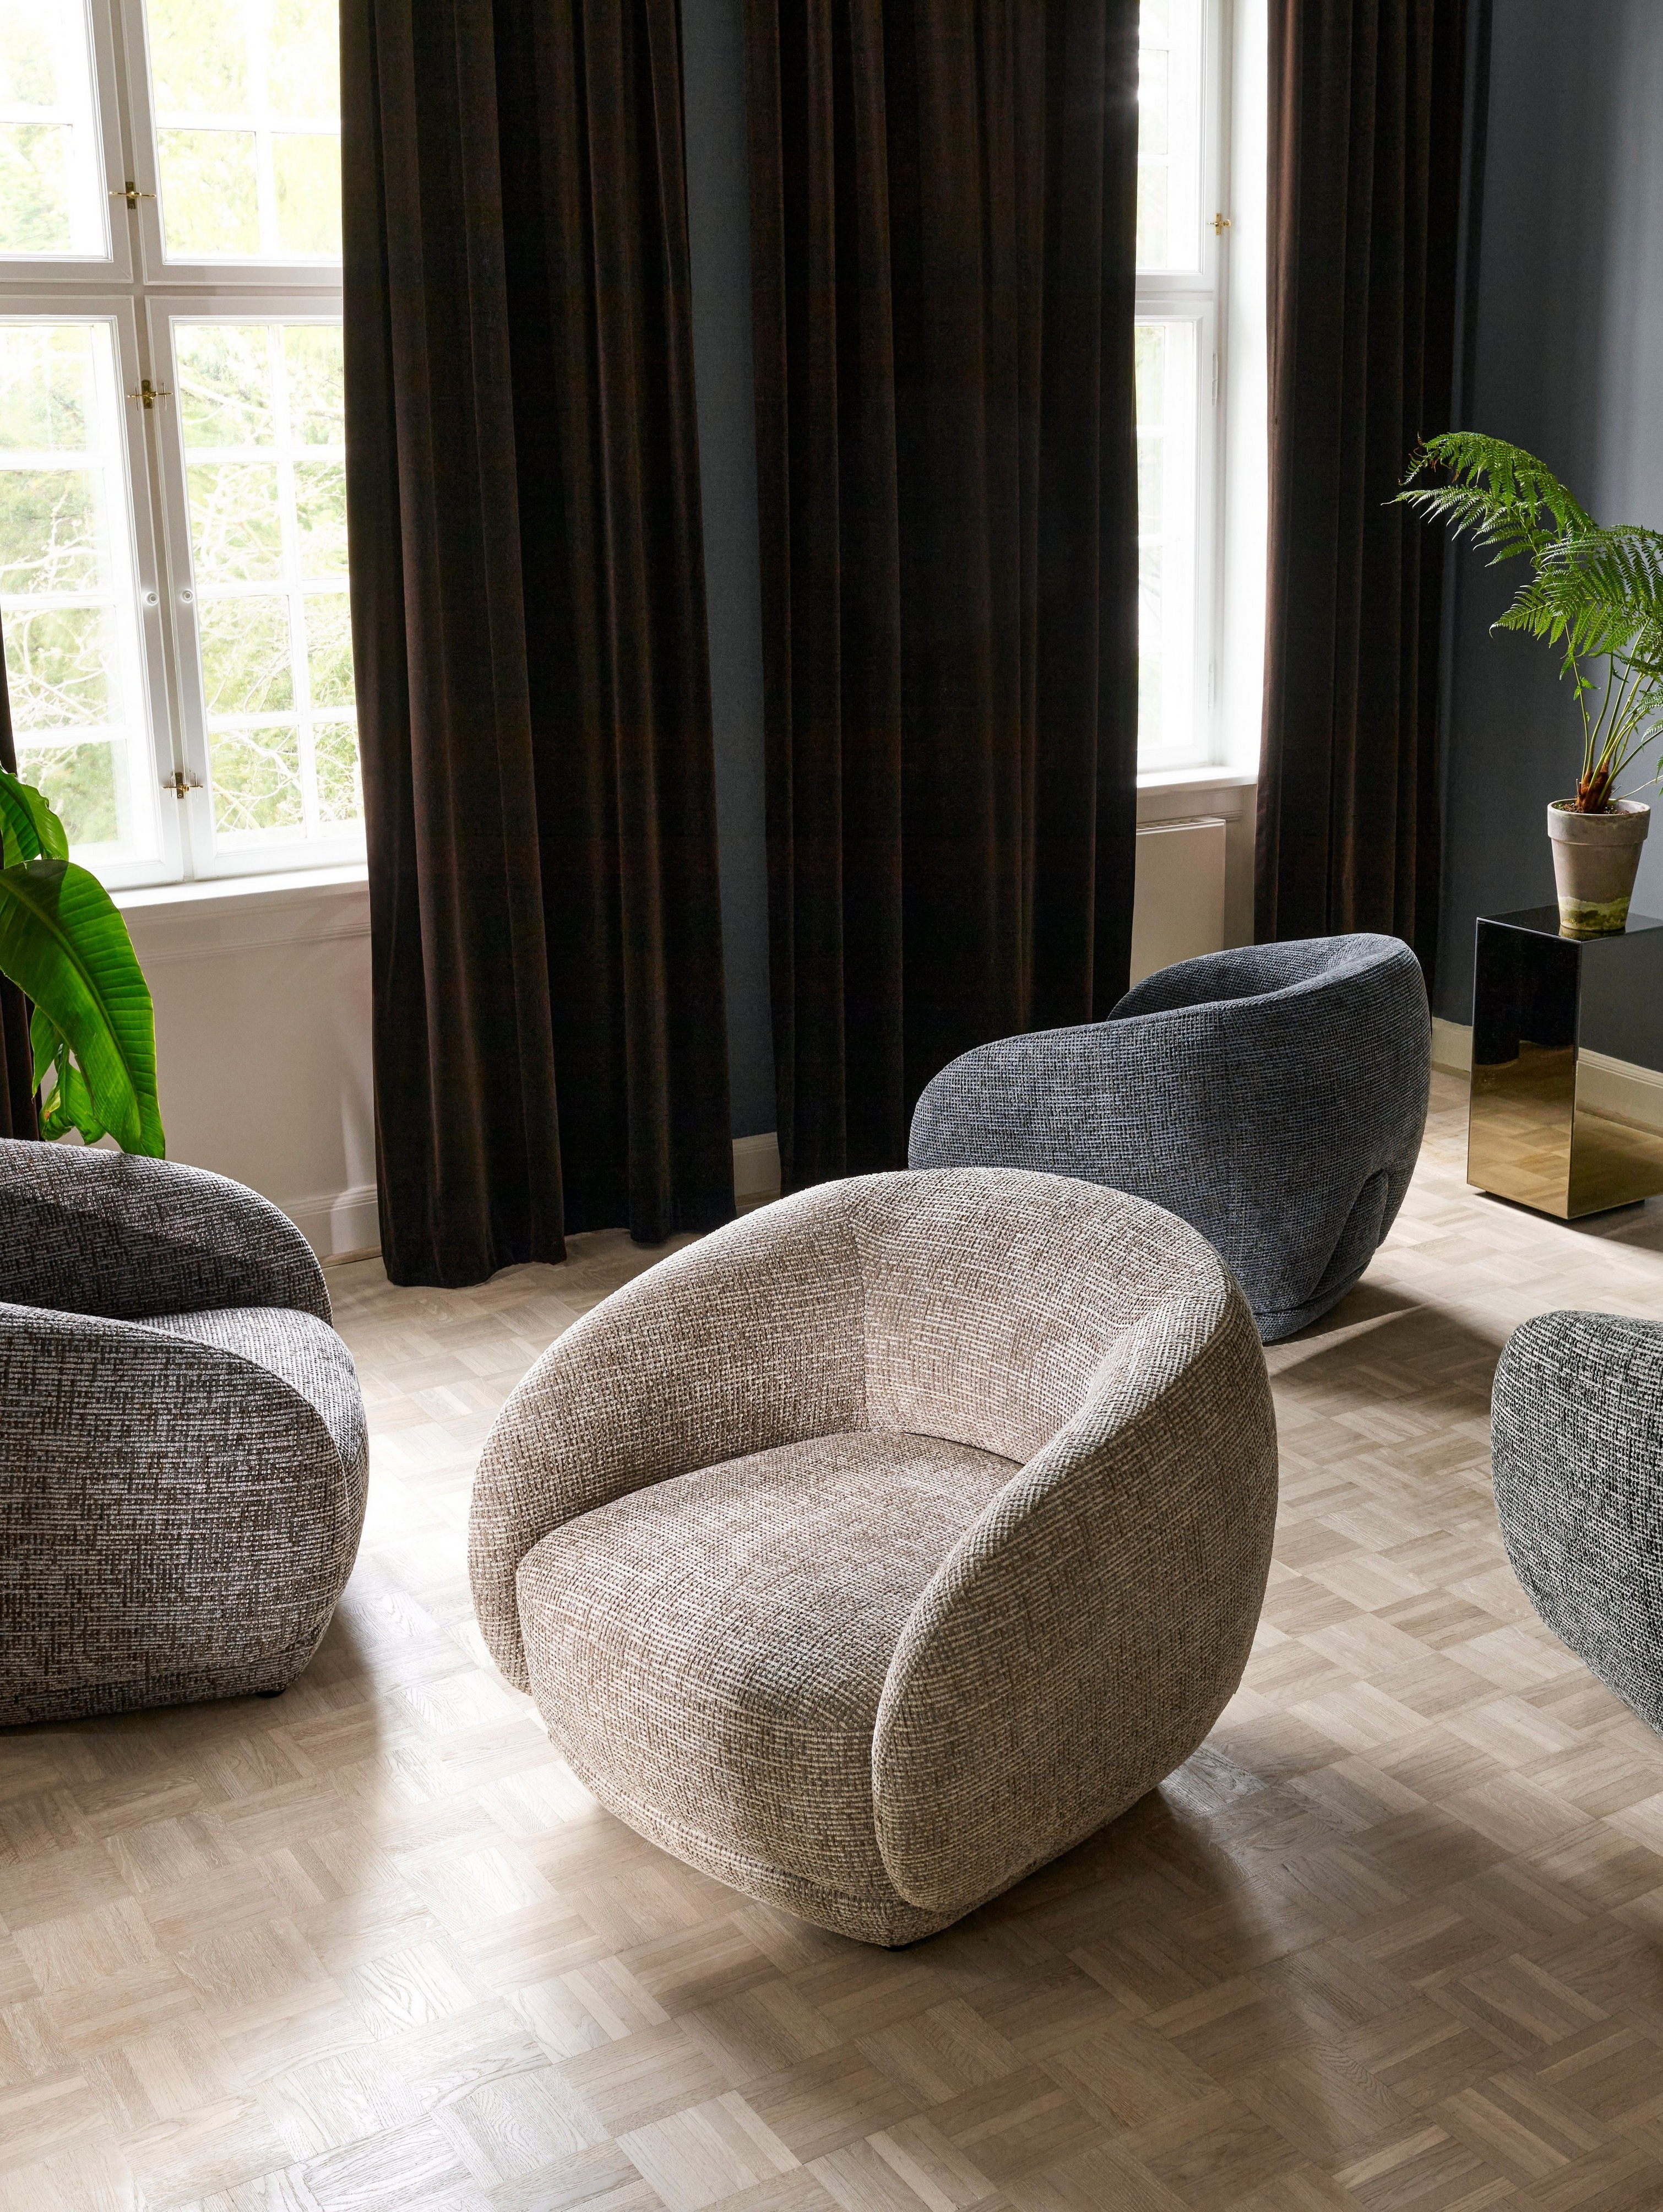 Vier Bolzano Sessel in einem Wohnzimmer, die nach dem Zufallsprinzip angeordnet sind.